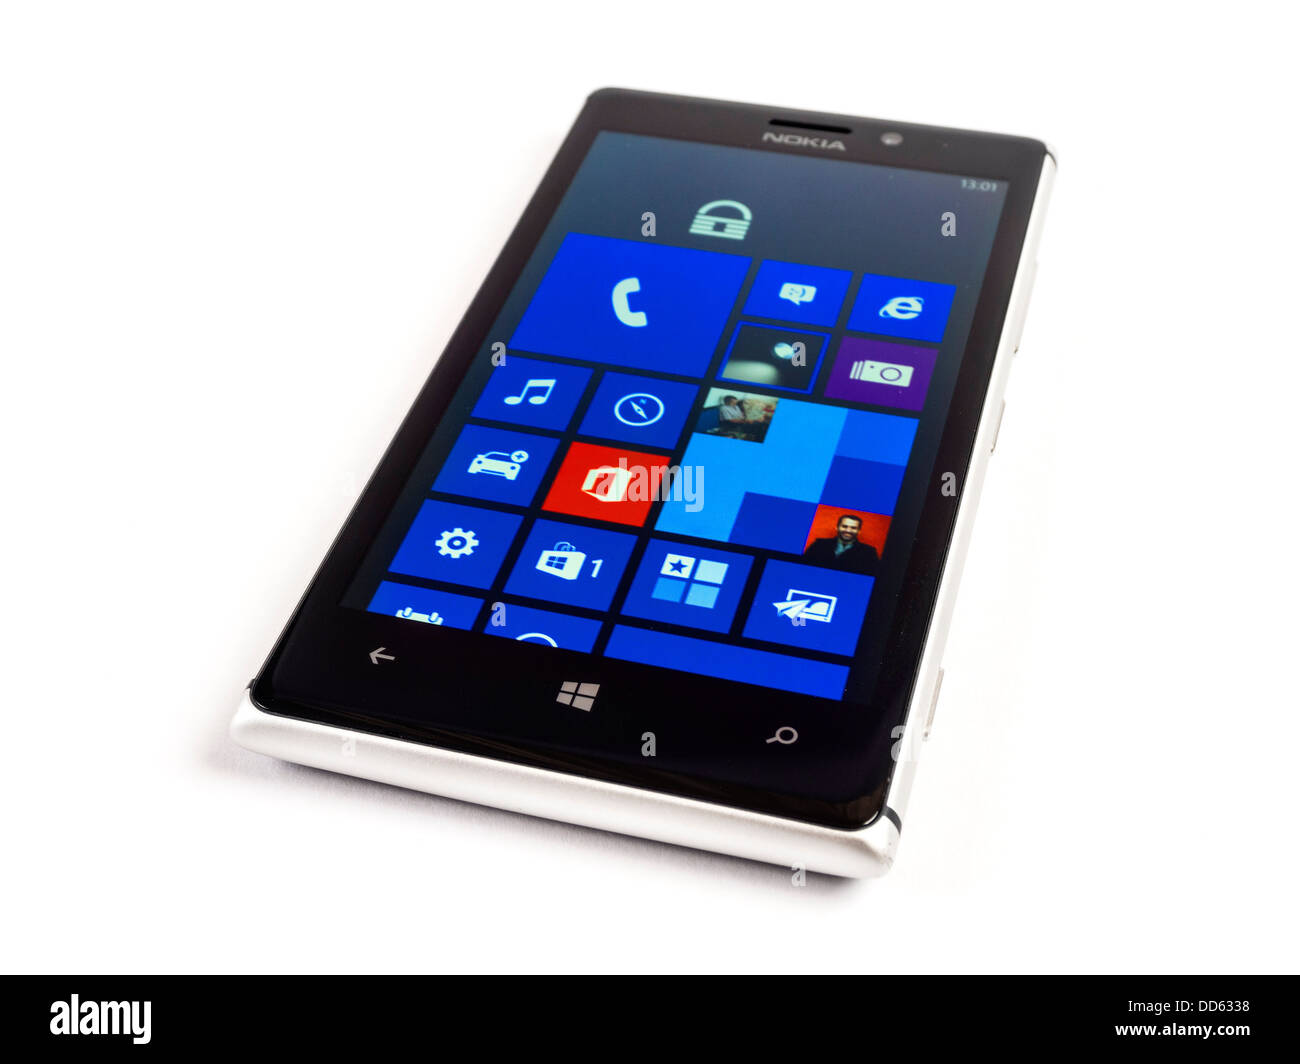 Nokia Lumia 925 Windows Phone 8 smartphone ritagliare isolati su sfondo bianco Foto Stock